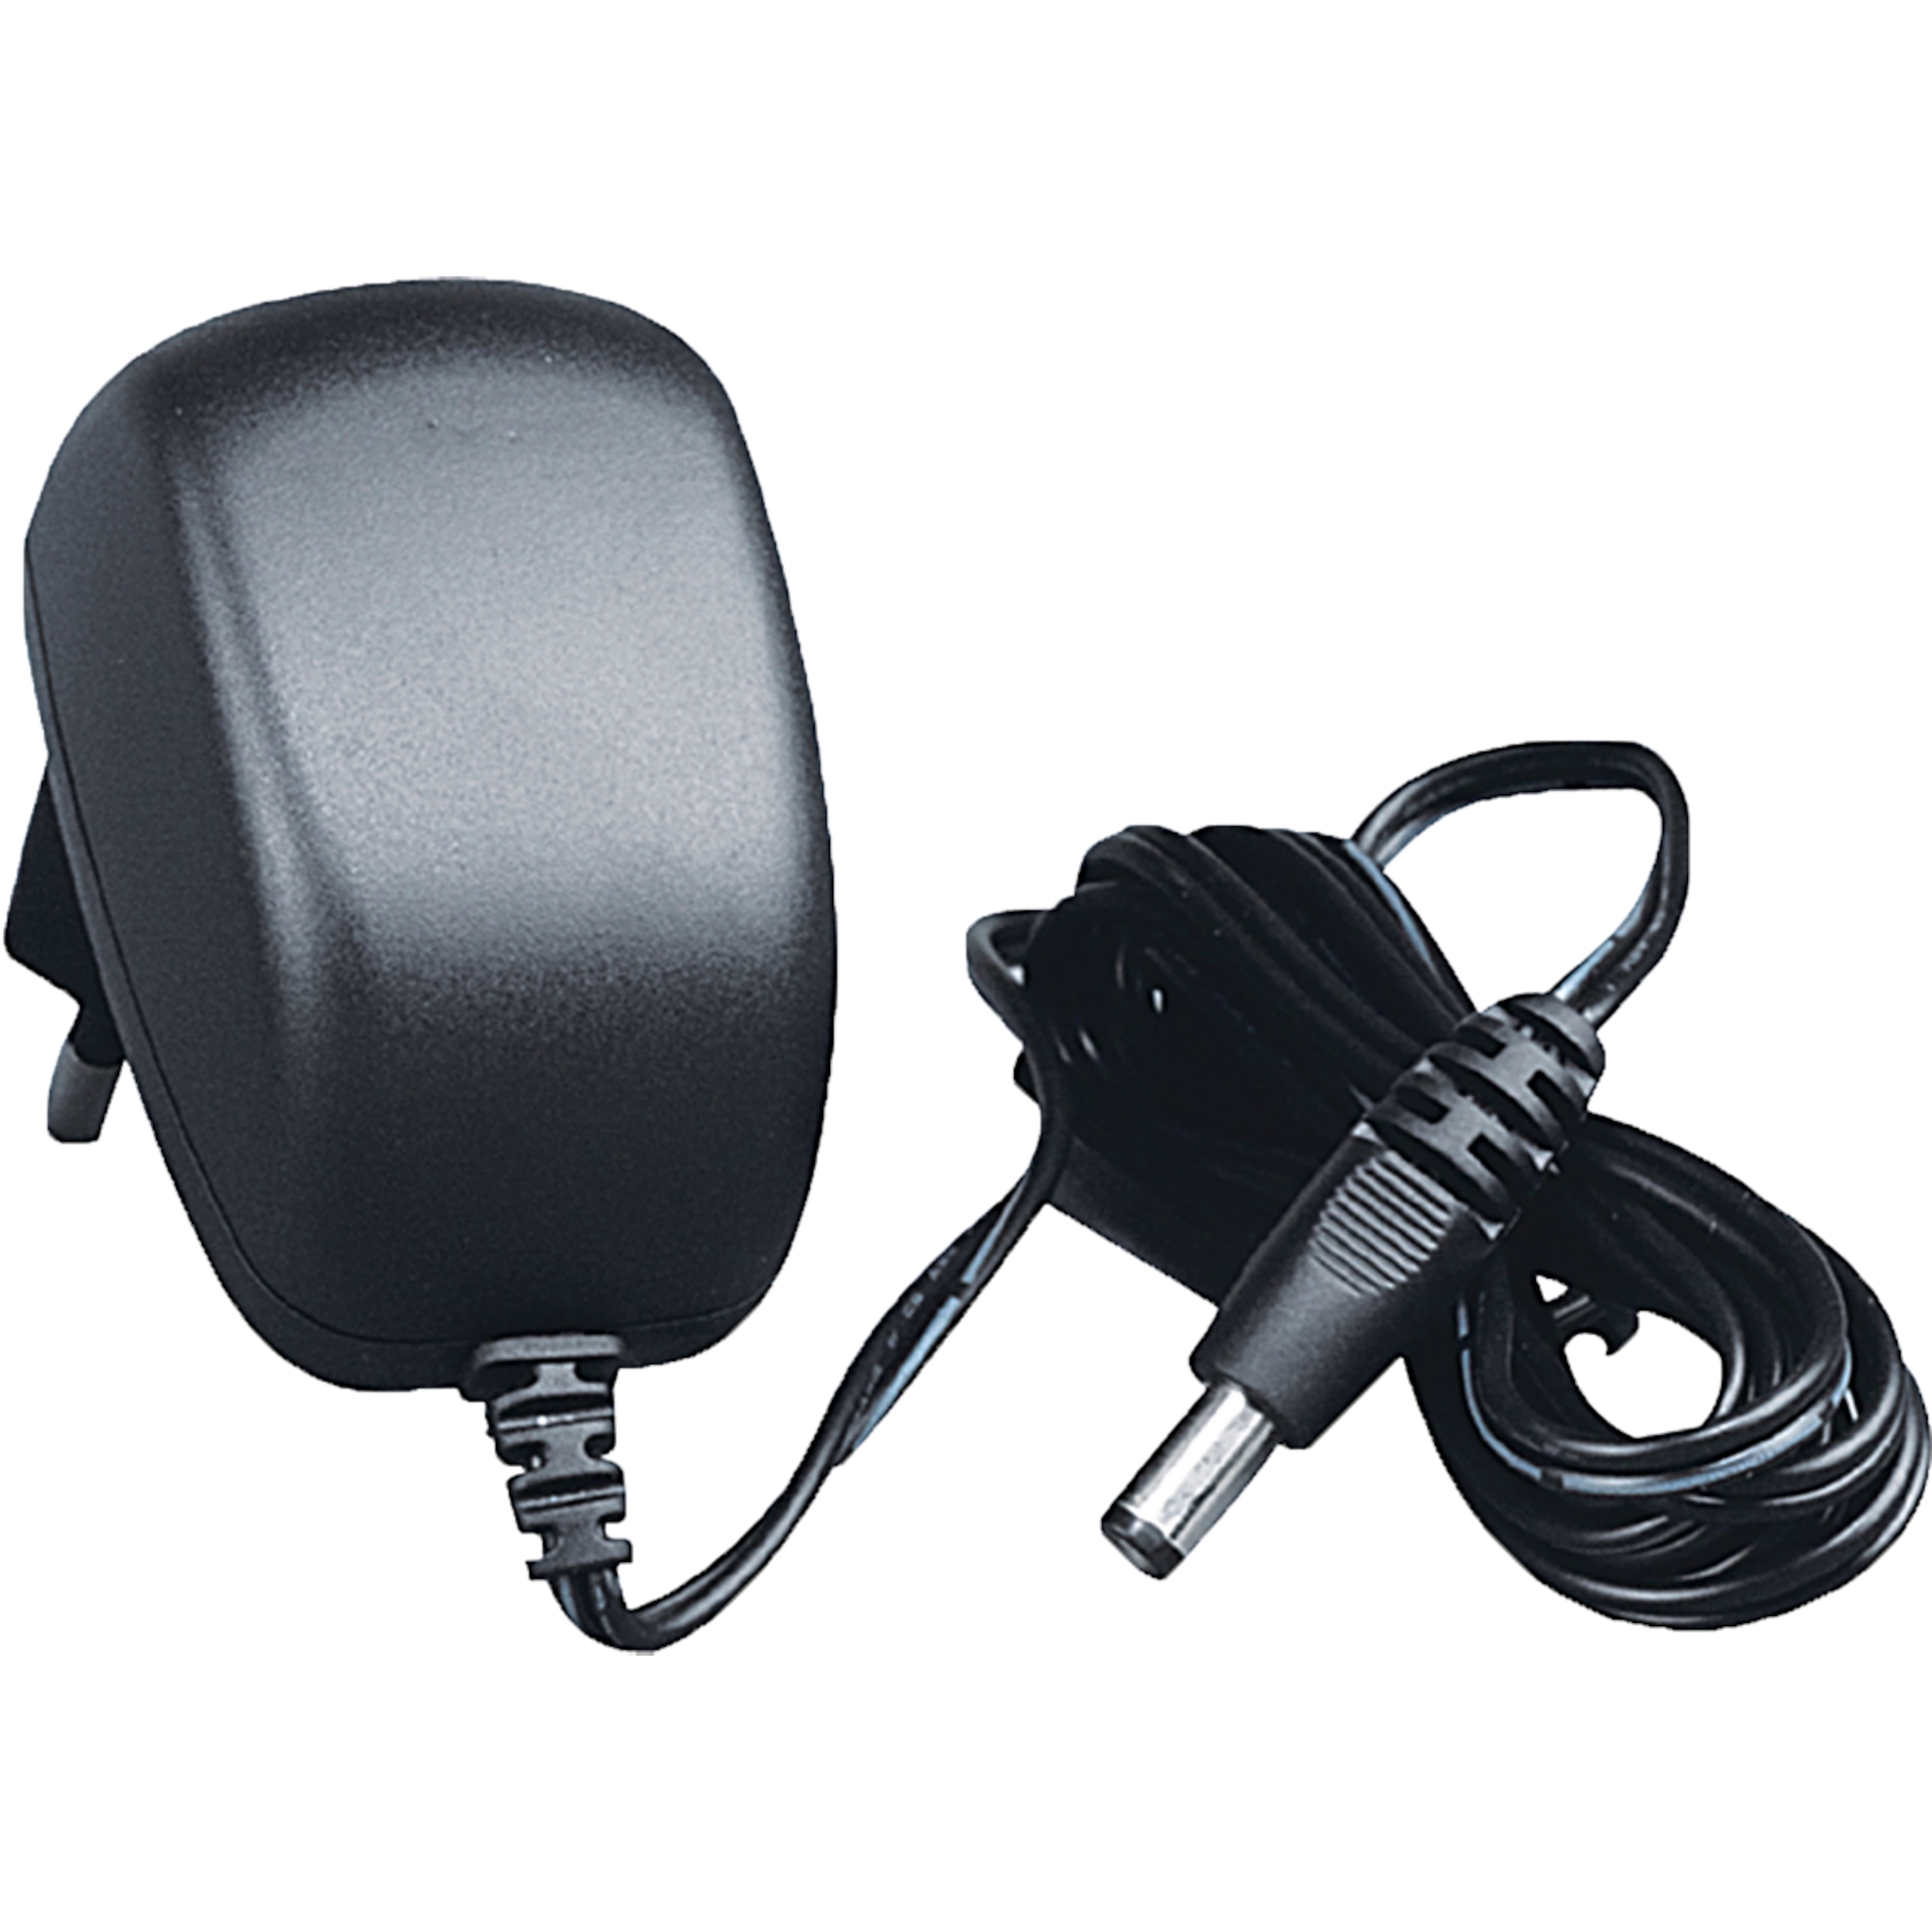 TELESTAR ANTENNA 9 LTE aktive Antenne schwarz, geeignet für DVB-T, DVB-T HD und DVB-T2, Full HD